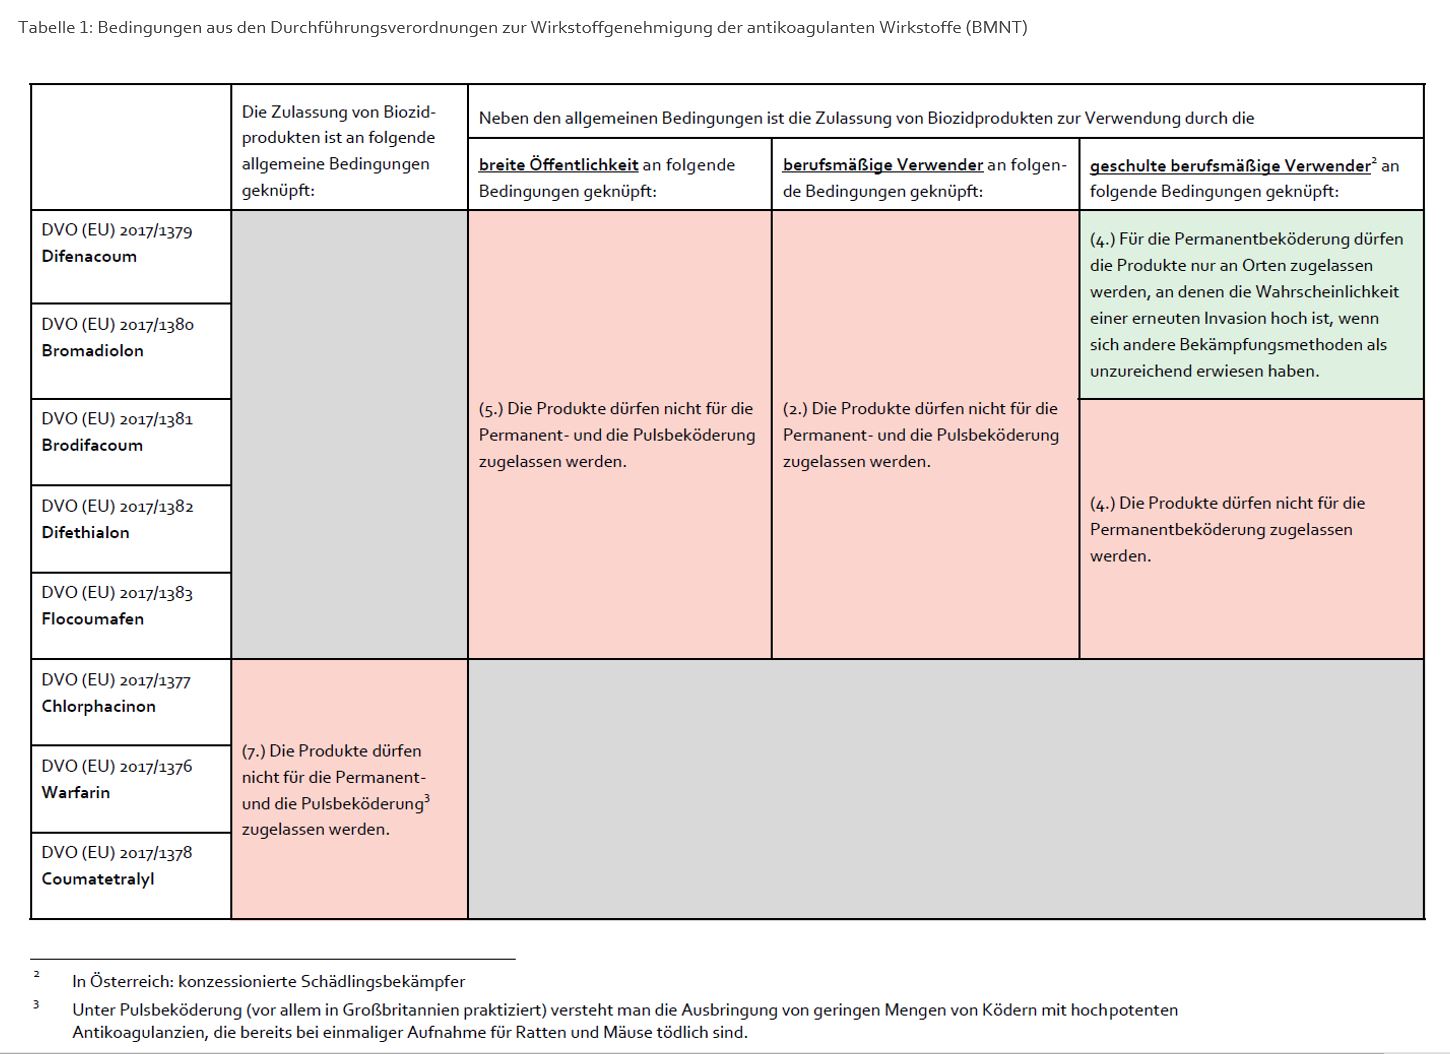 Abbildung einer Tabelle, die die Bedingungen der Verwendung von Biozidprodukten mit anti-koagulanten Wirkstoffen beschreibt